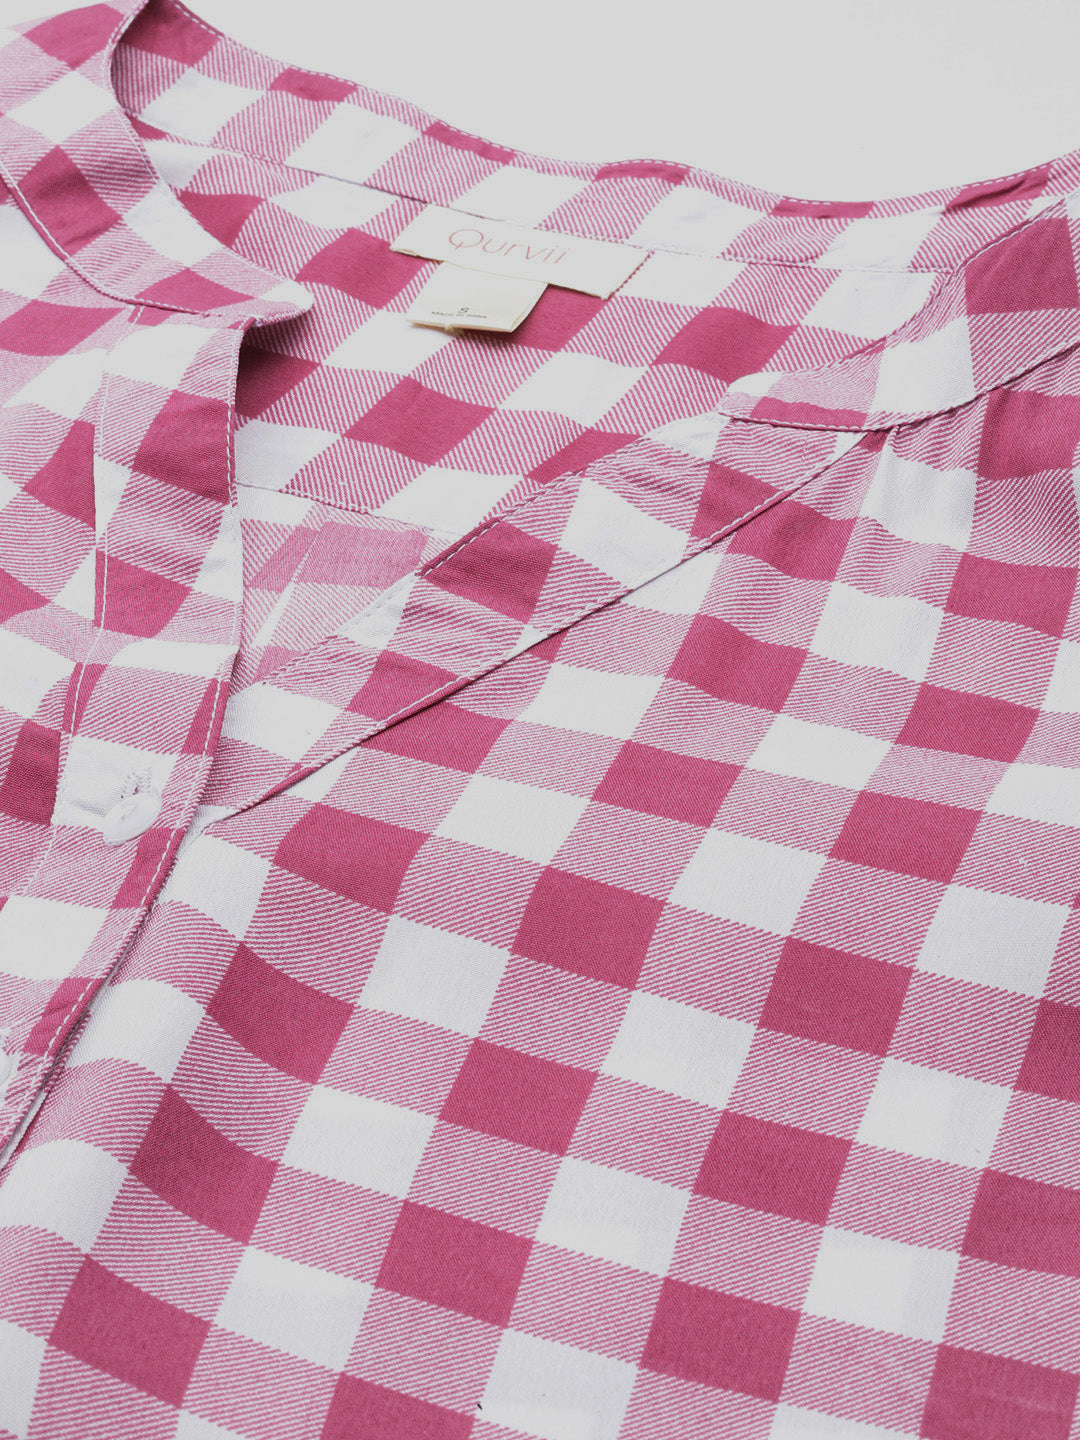 Pink & white check crepe shirt and pant set.